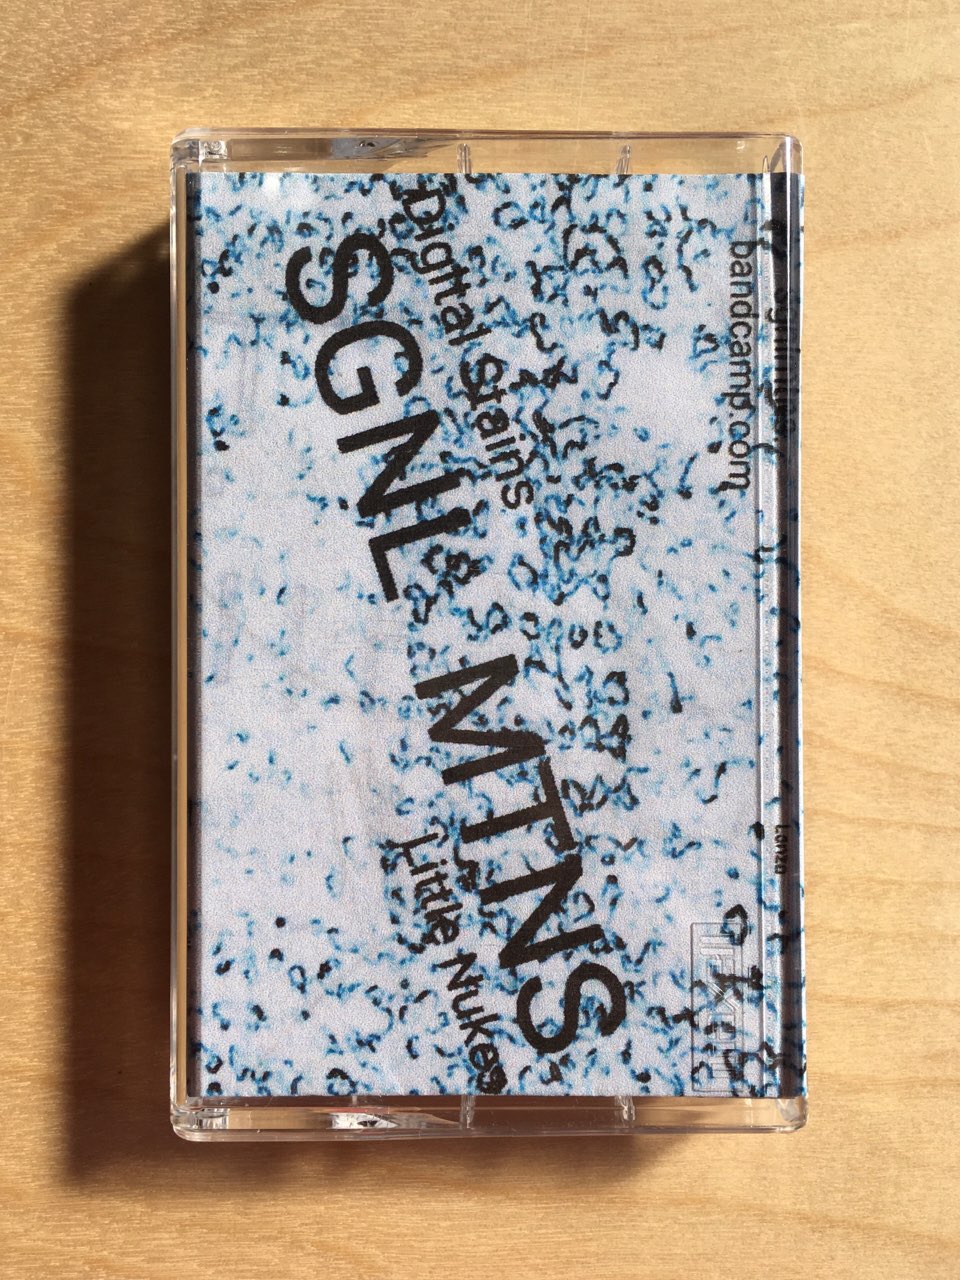 SGNL MTNS - Digital Stains/Little Nukes (Cassette)